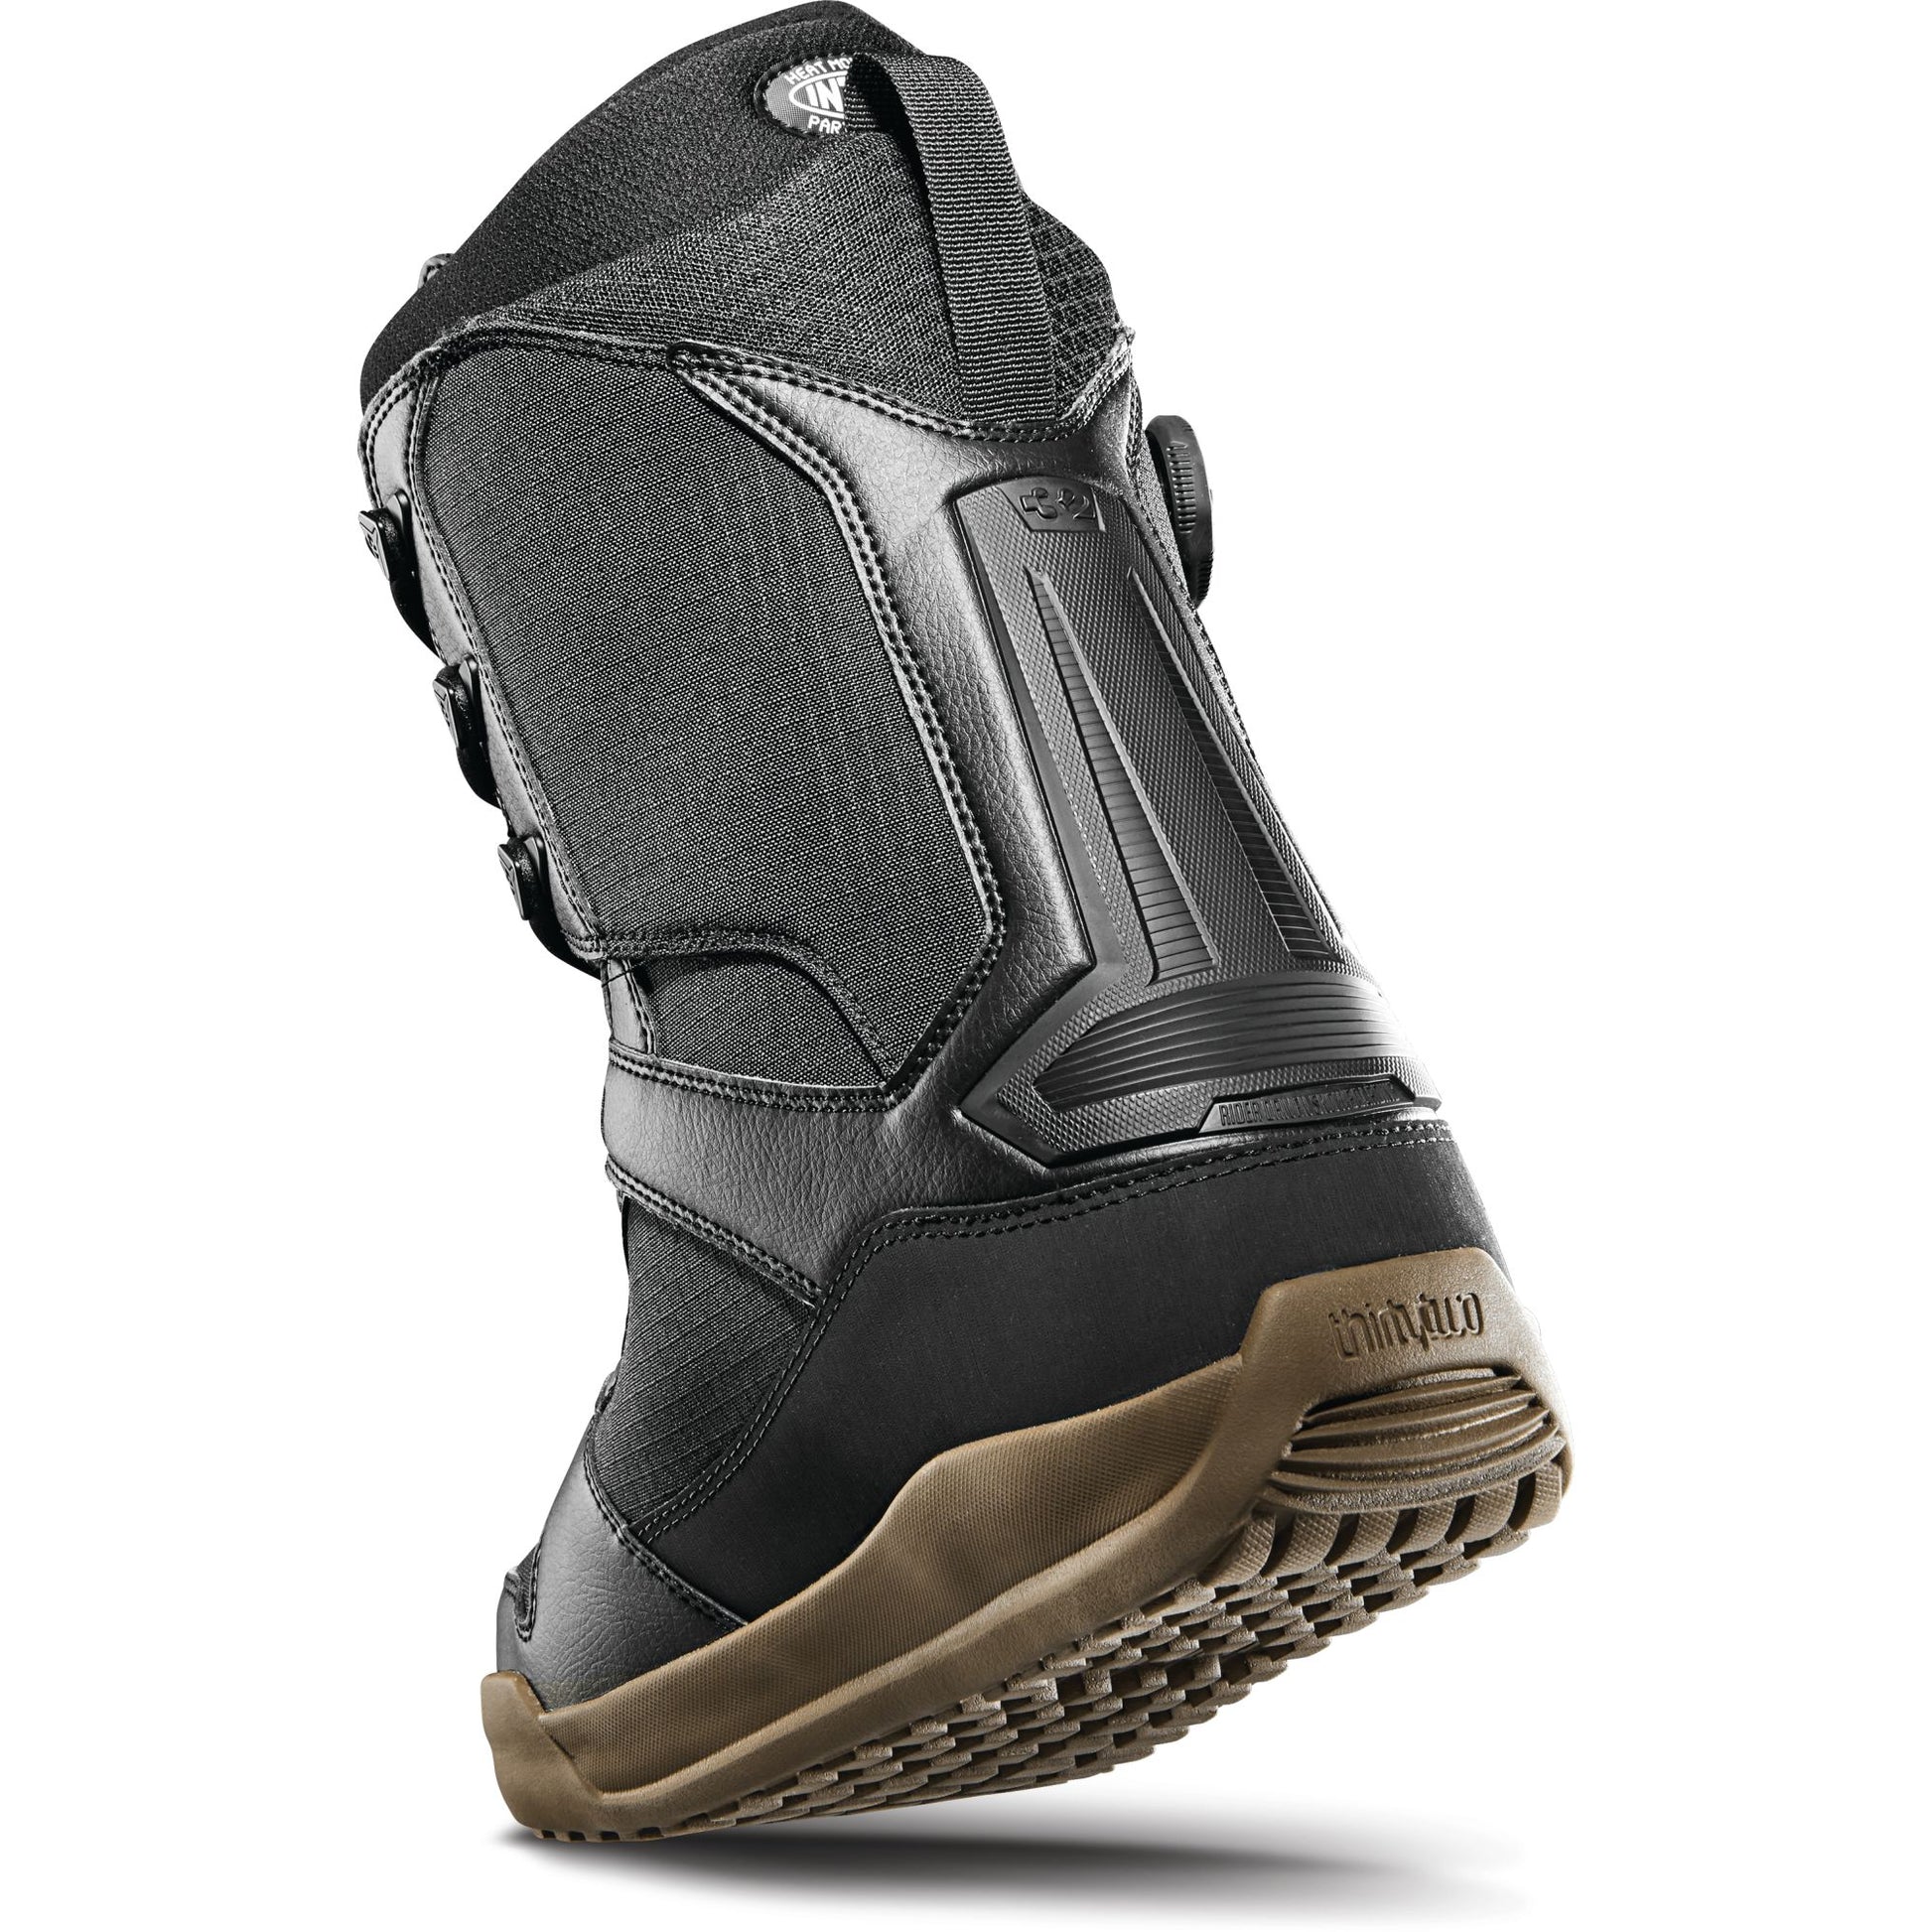 ThirtyTwo Diesel Hybrid Snowboard Boots Black Gum Snowboard Boots